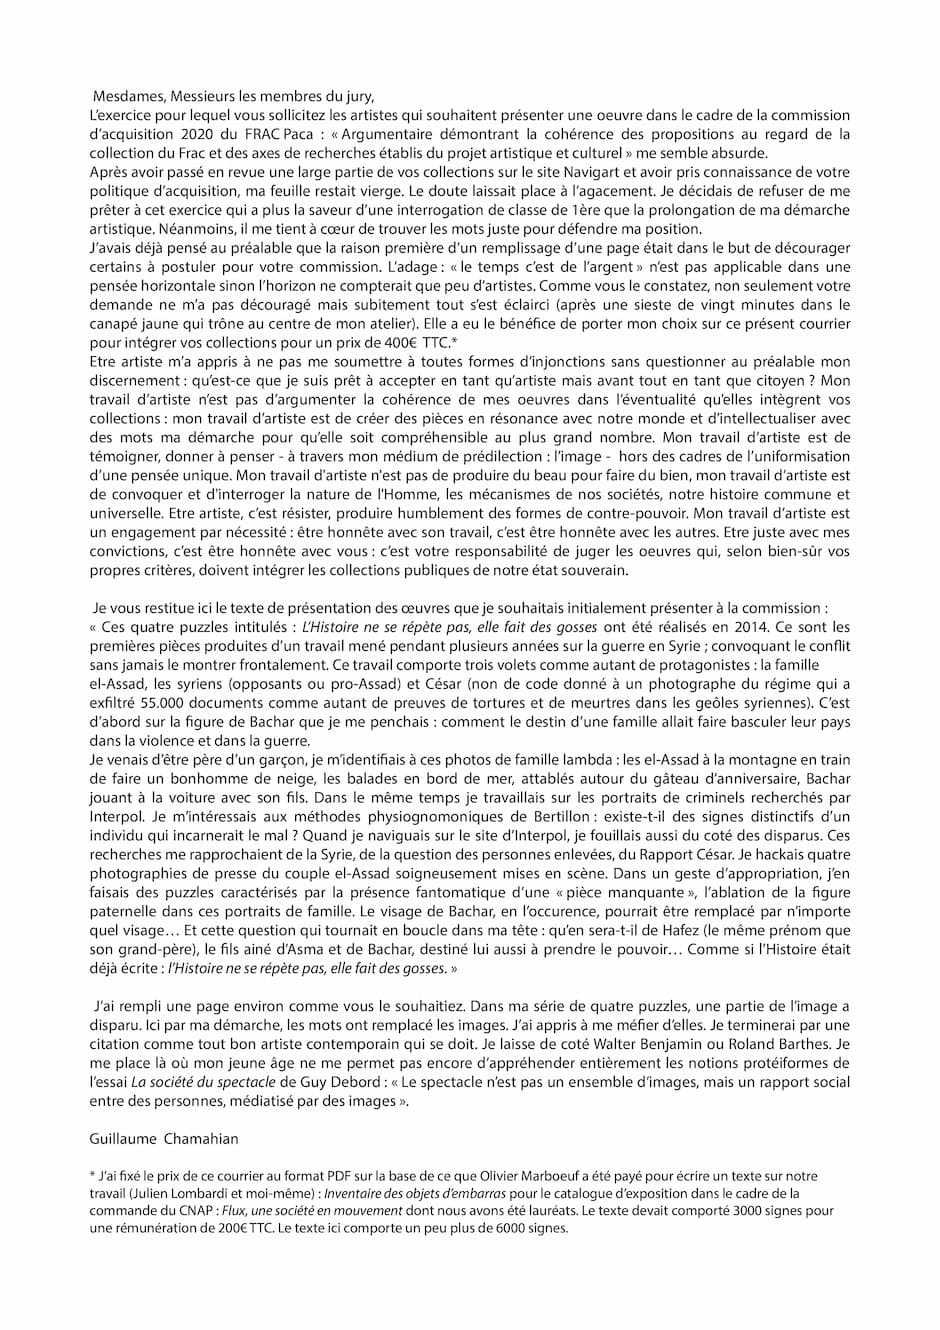 Guillaume Chamahian, Mesdames, messieurs les membres du jury 2020, Septembre 2020. Encre et papier blanc 90gr, 29,7 x 21 cm. Achat à l'artiste. Collection Frac Provence-Alpes-Côte d'Azur. © droits réservés